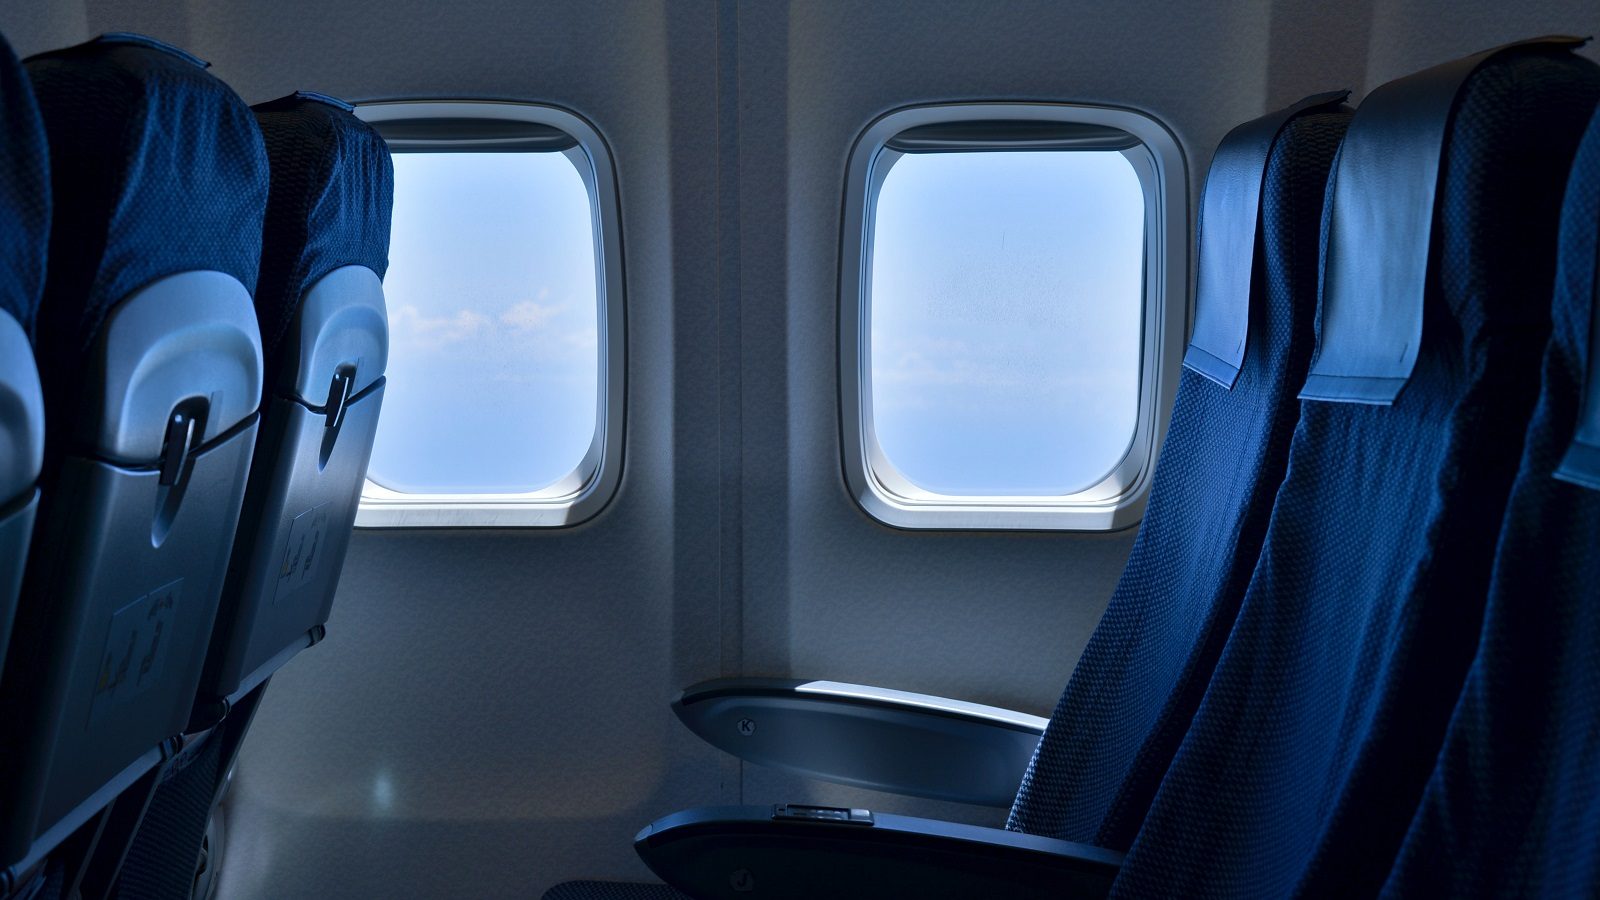 Istraživanje otkrilo koja mesta u avionu su najbezbednija: A svi ih izbegavaju